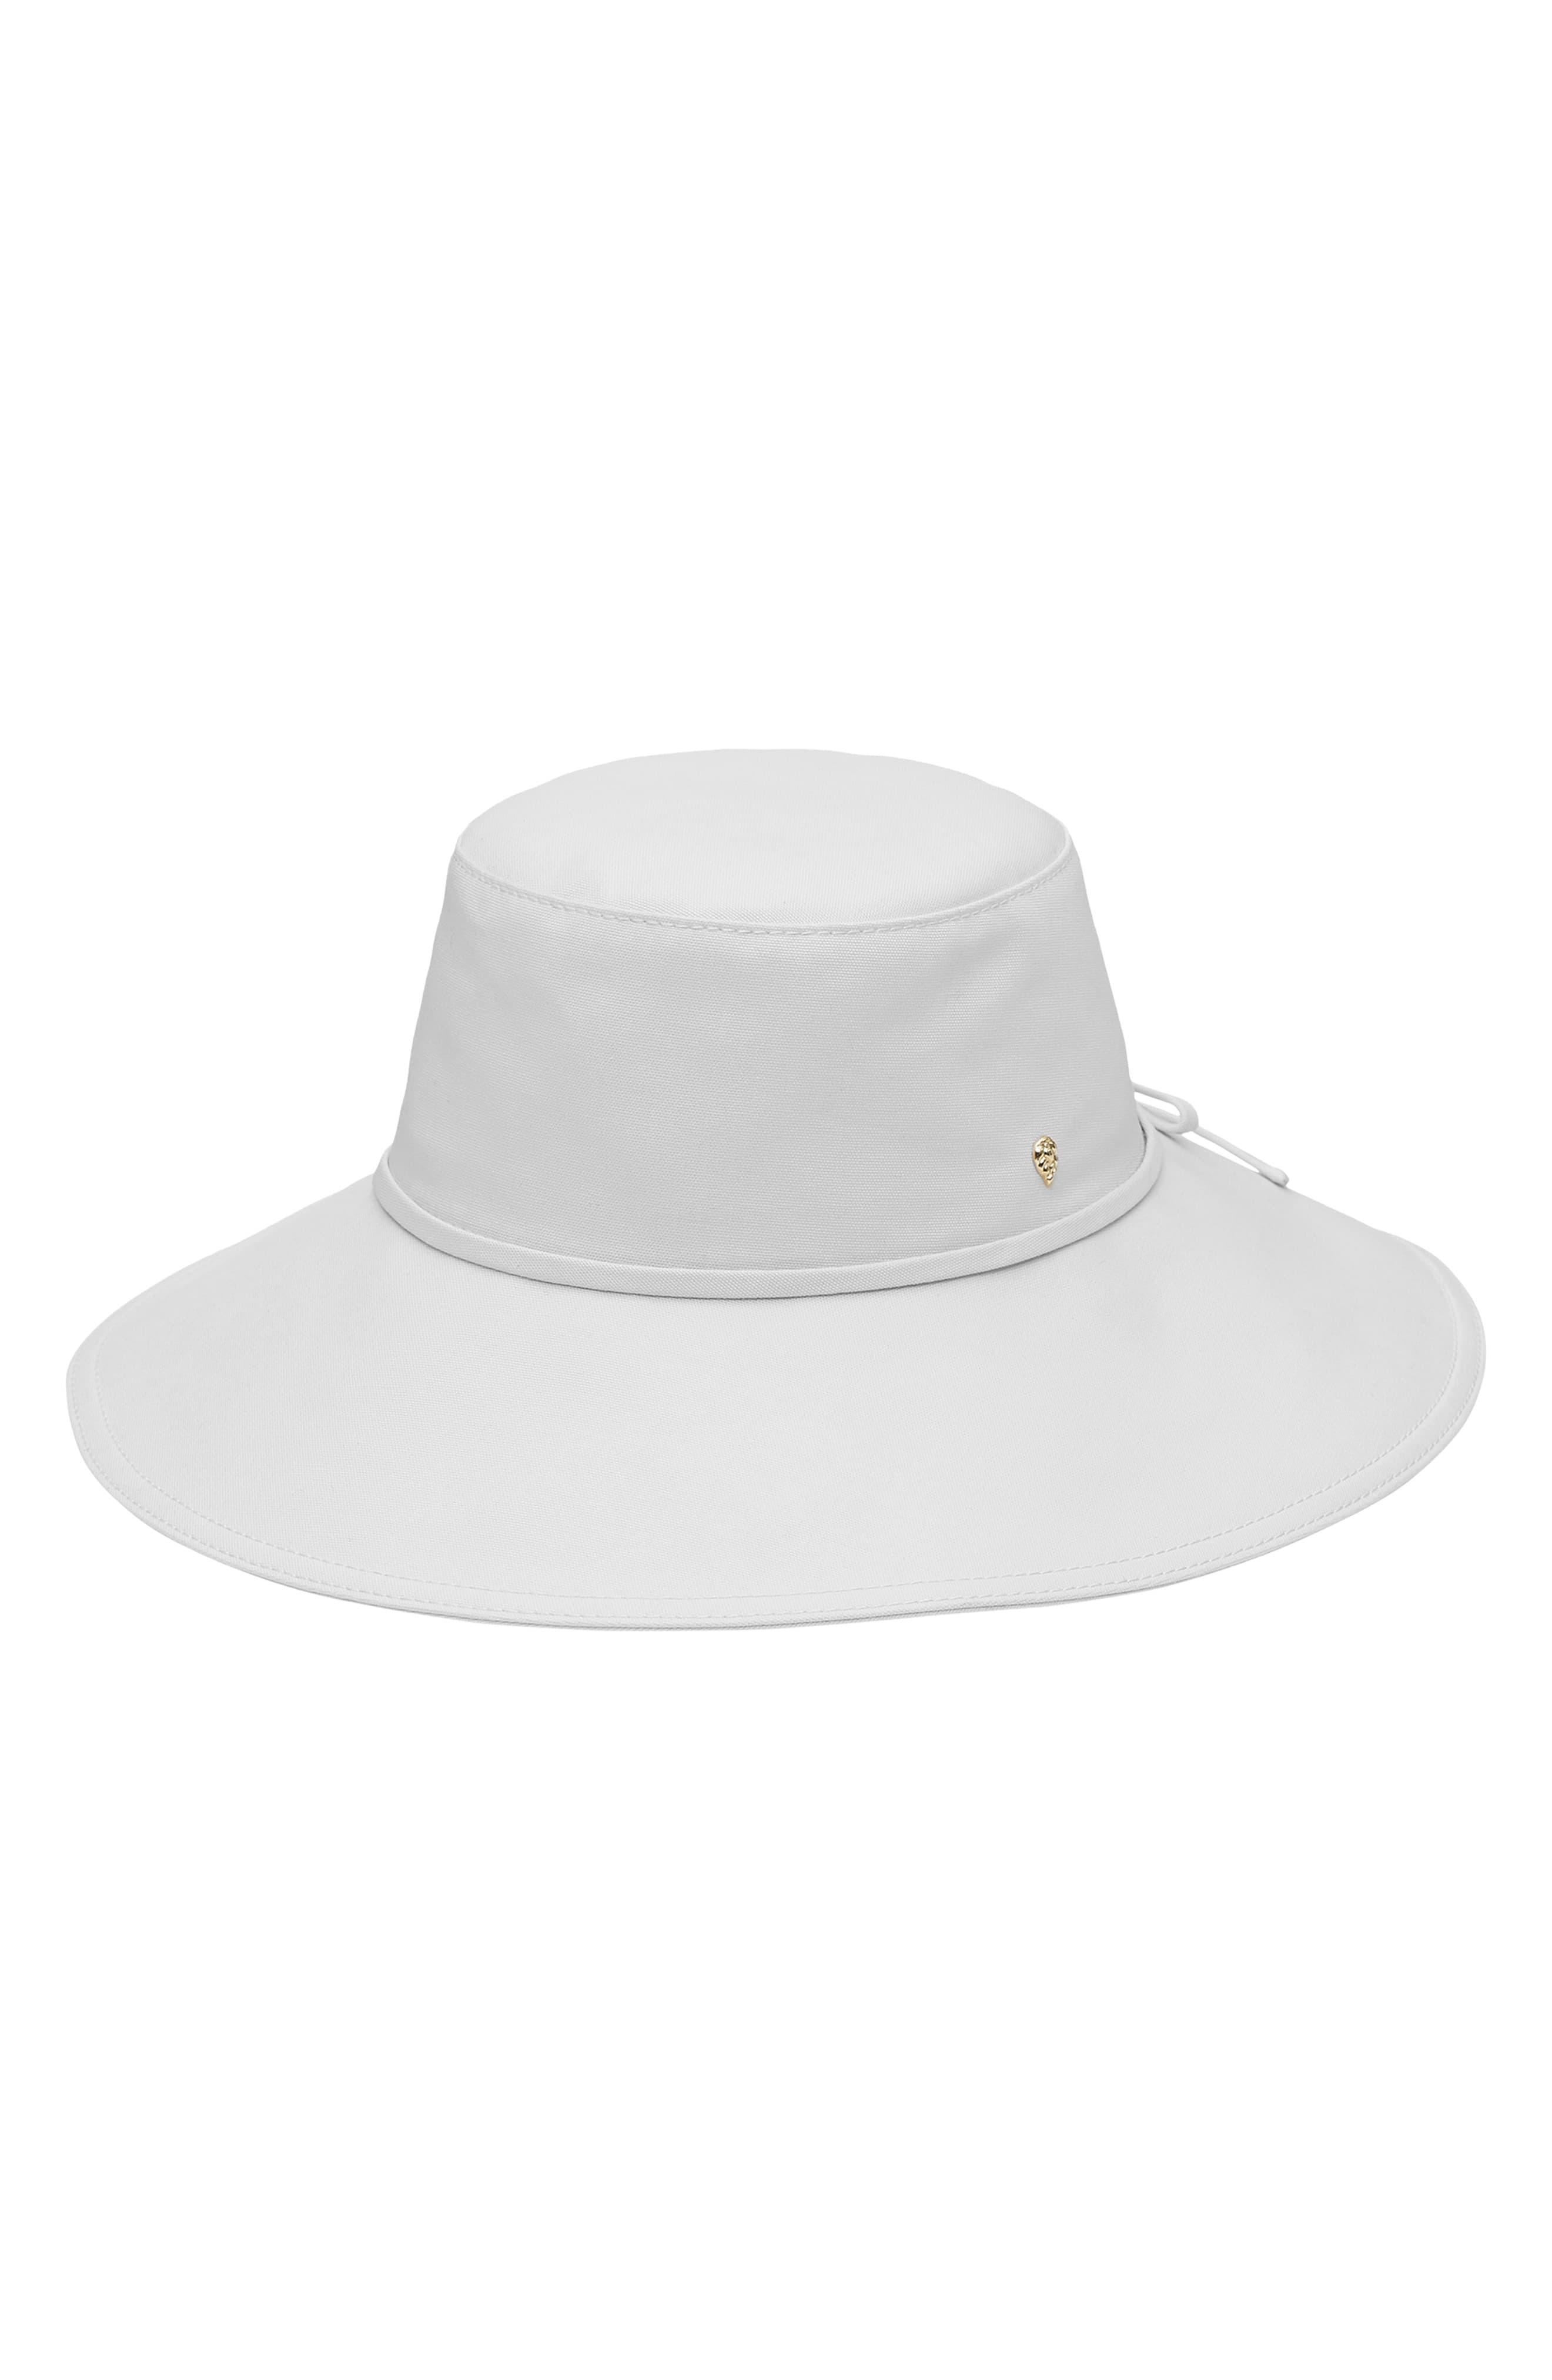 Helen Kaminski Wide Brim Canvas Hat in White - Lyst